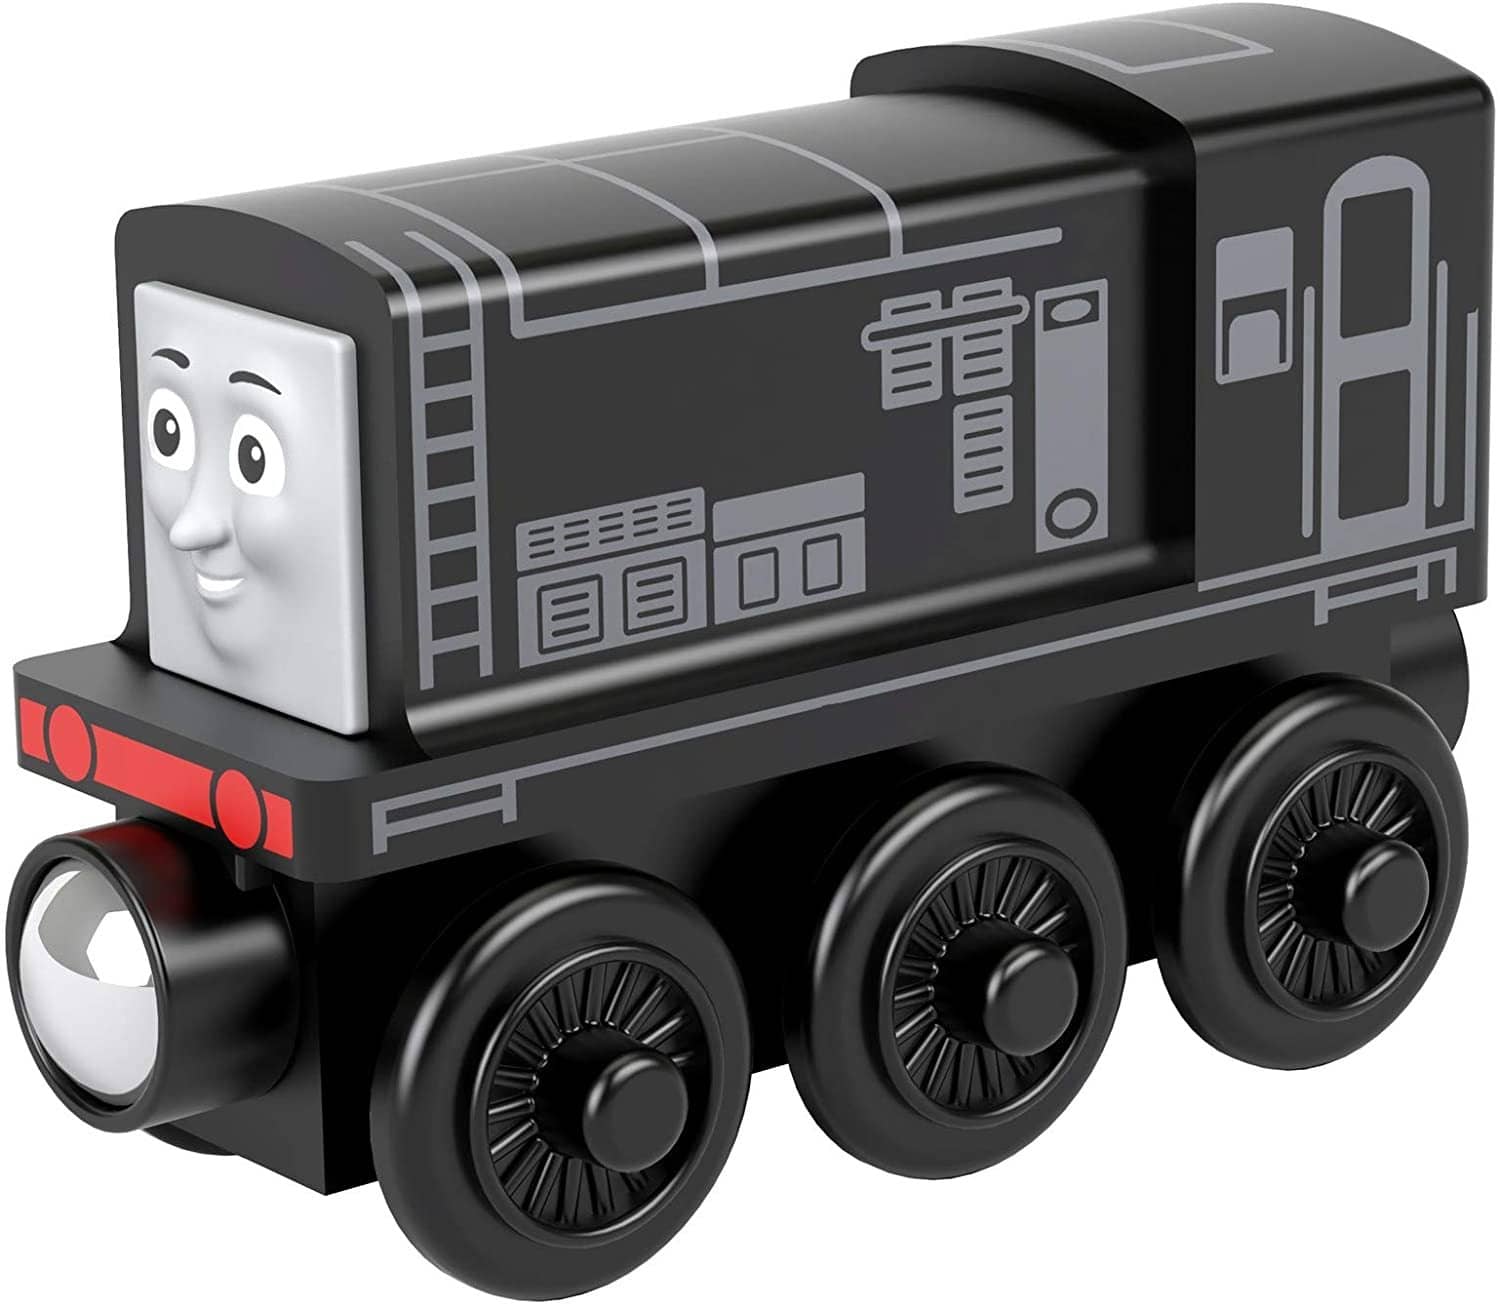 Thomas & Friends Wooden Railway: Diesel-Kidding Around NYC